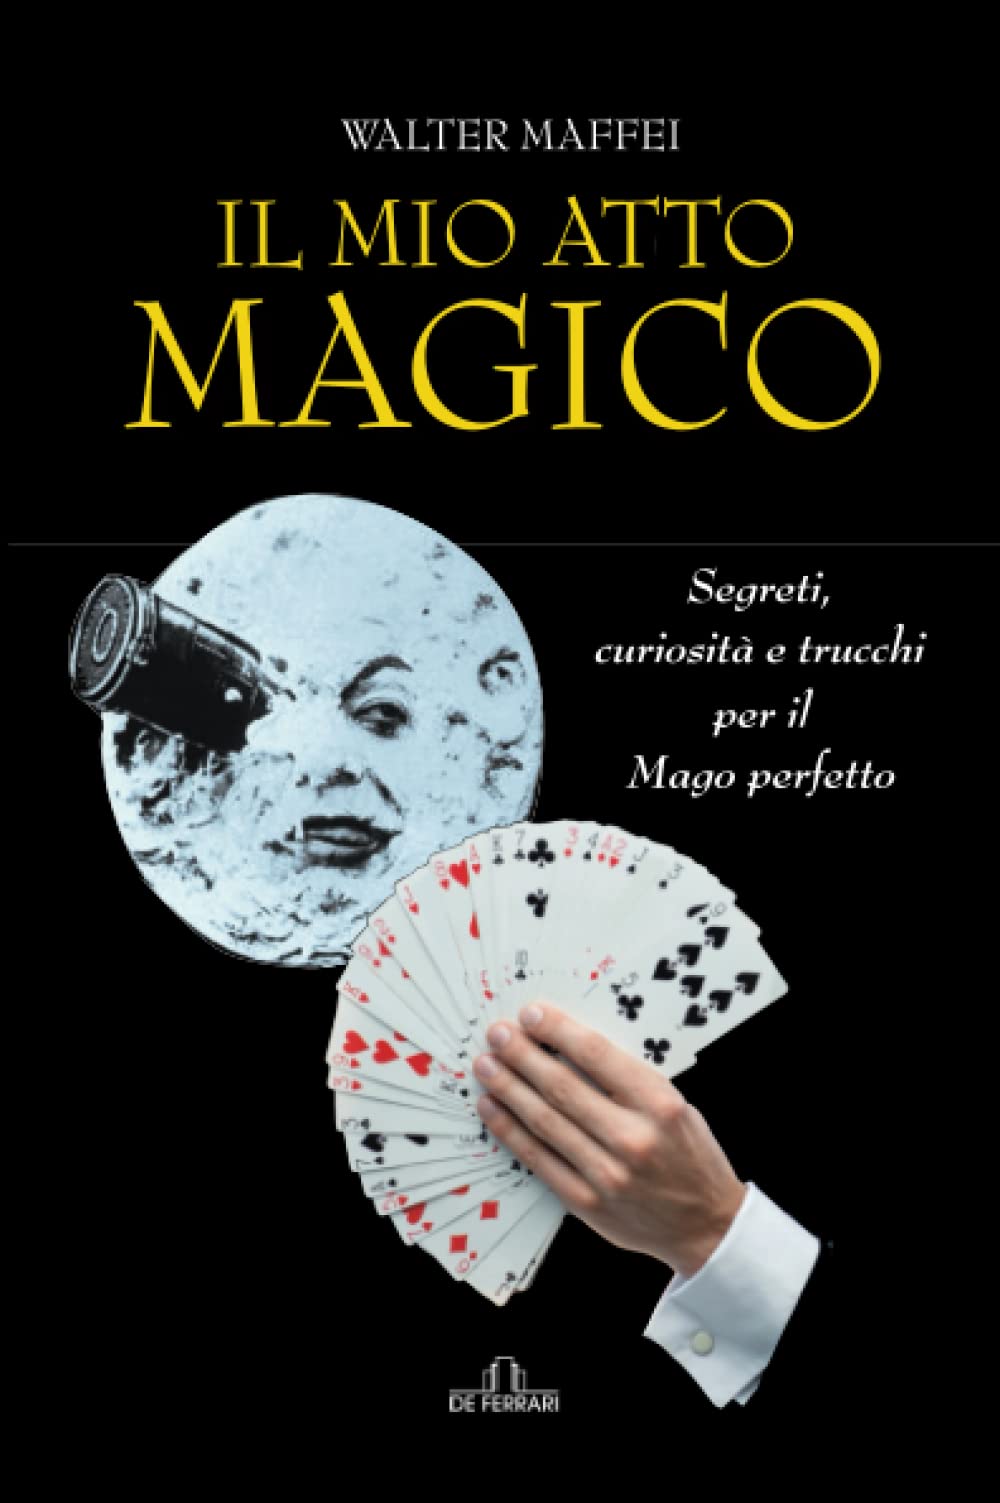 Copertina libro Walter Maffei Il mio atto magico